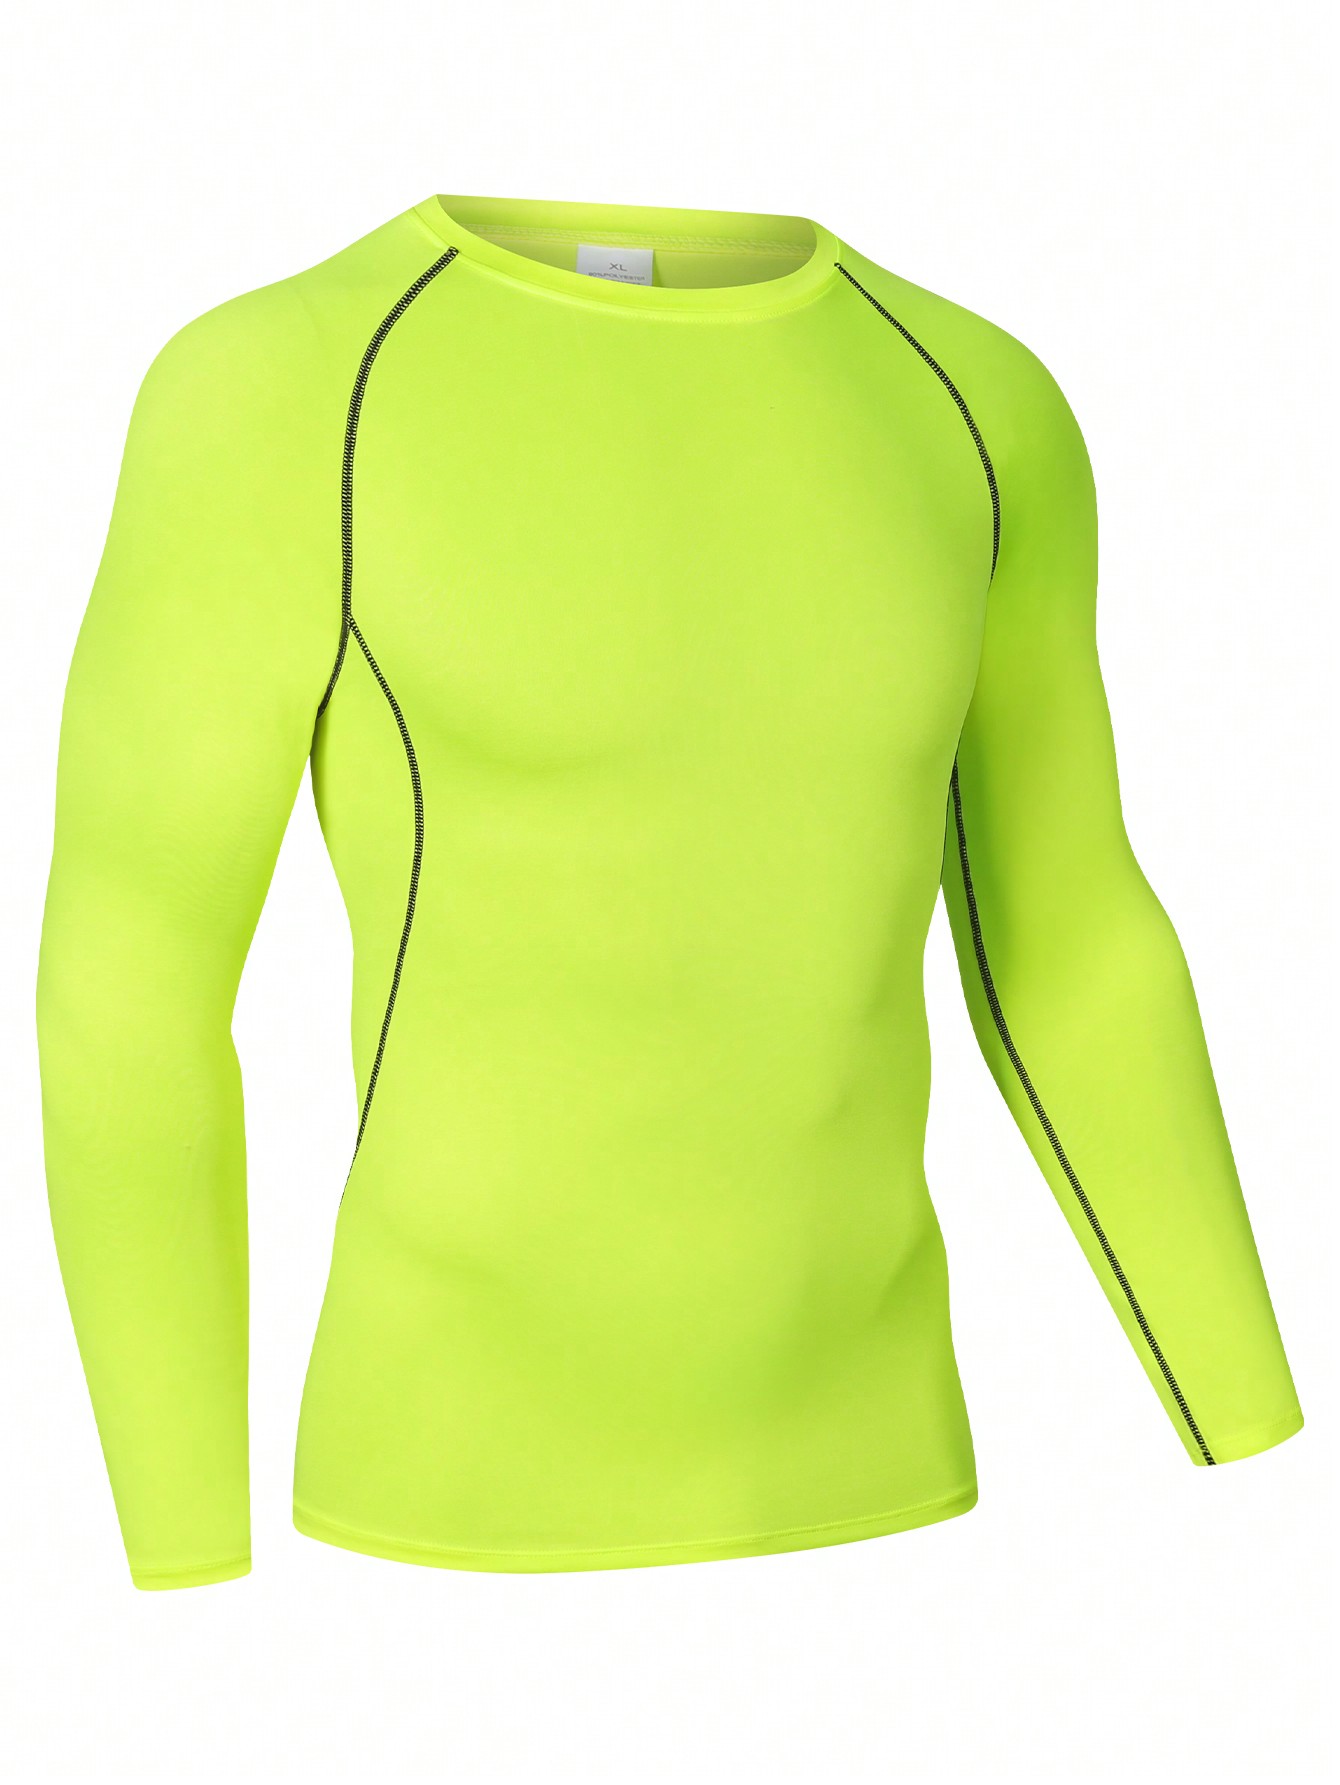 Мужская эластичная компрессионная рубашка для фитнеса с длинными рукавами, зеленый новинка весна лето 2021 мужская облегающая футболка поло с коротким рукавом для фитнеса дышащая спортивная одежда мужская повседневная руб